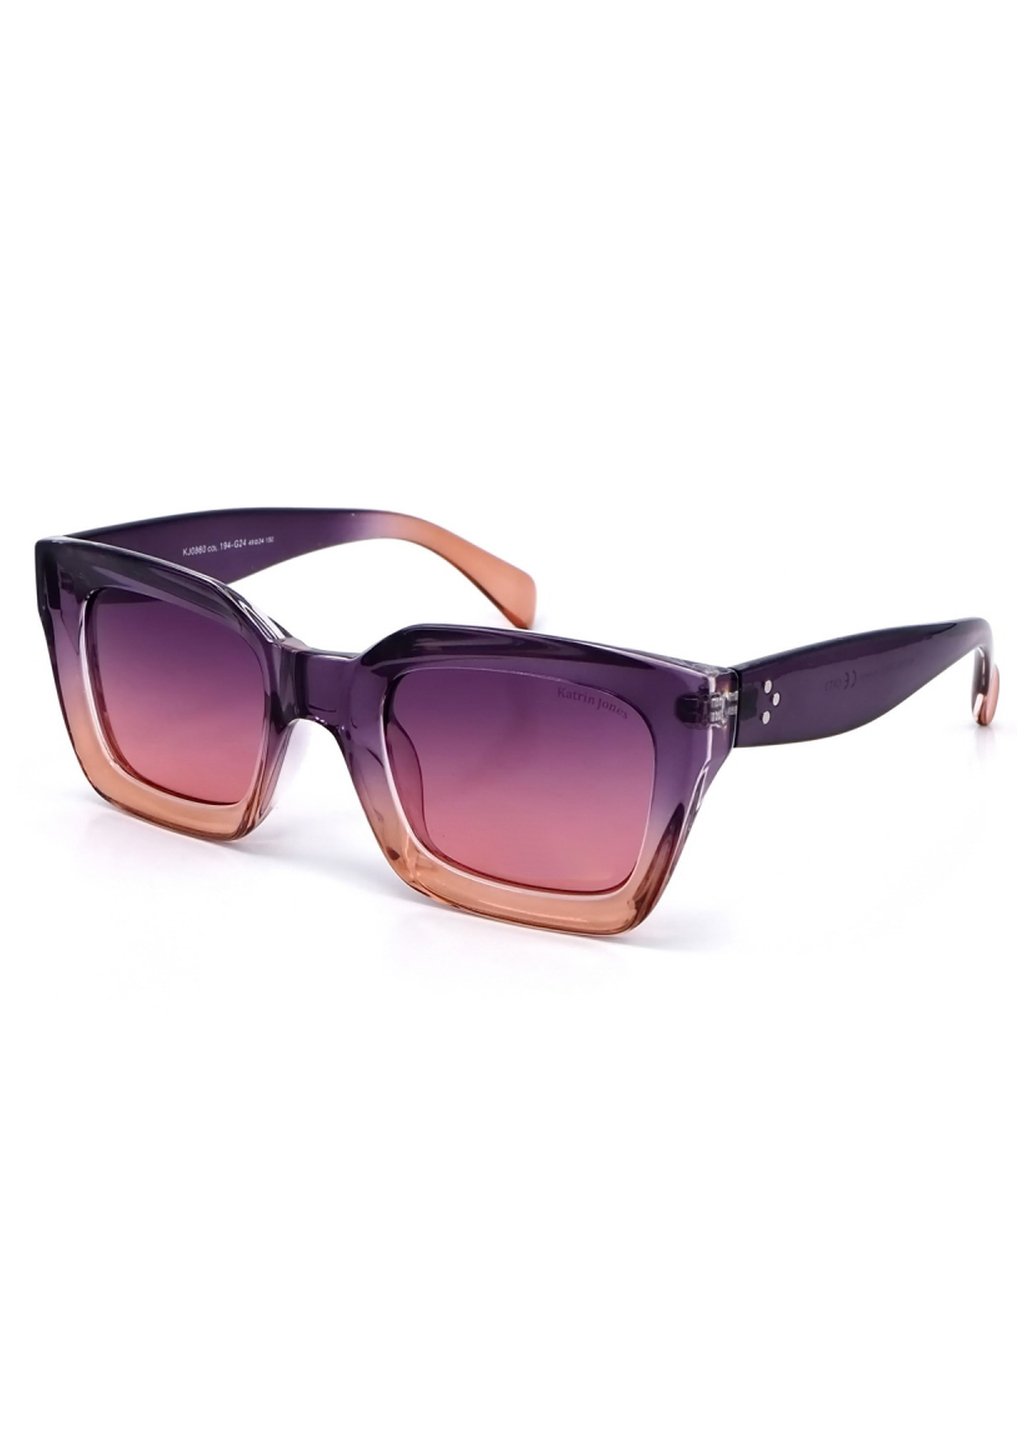 Купить Женские солнцезащитные очки Katrin Jones с поляризацией KJ0860 180047 - Фиолетовый в интернет-магазине